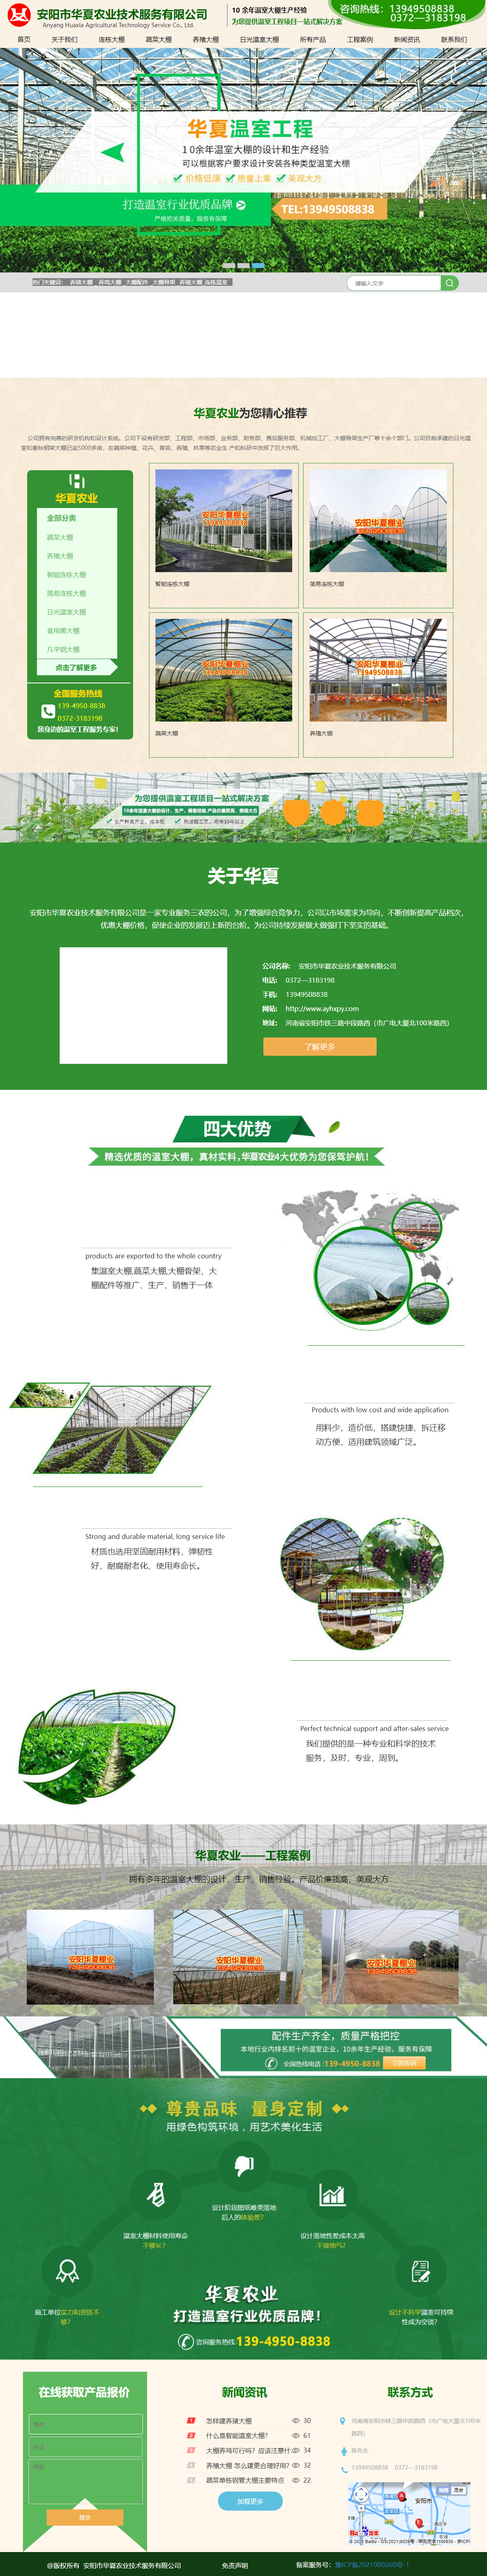 安阳市华夏农业技术服务有限公司网站案例